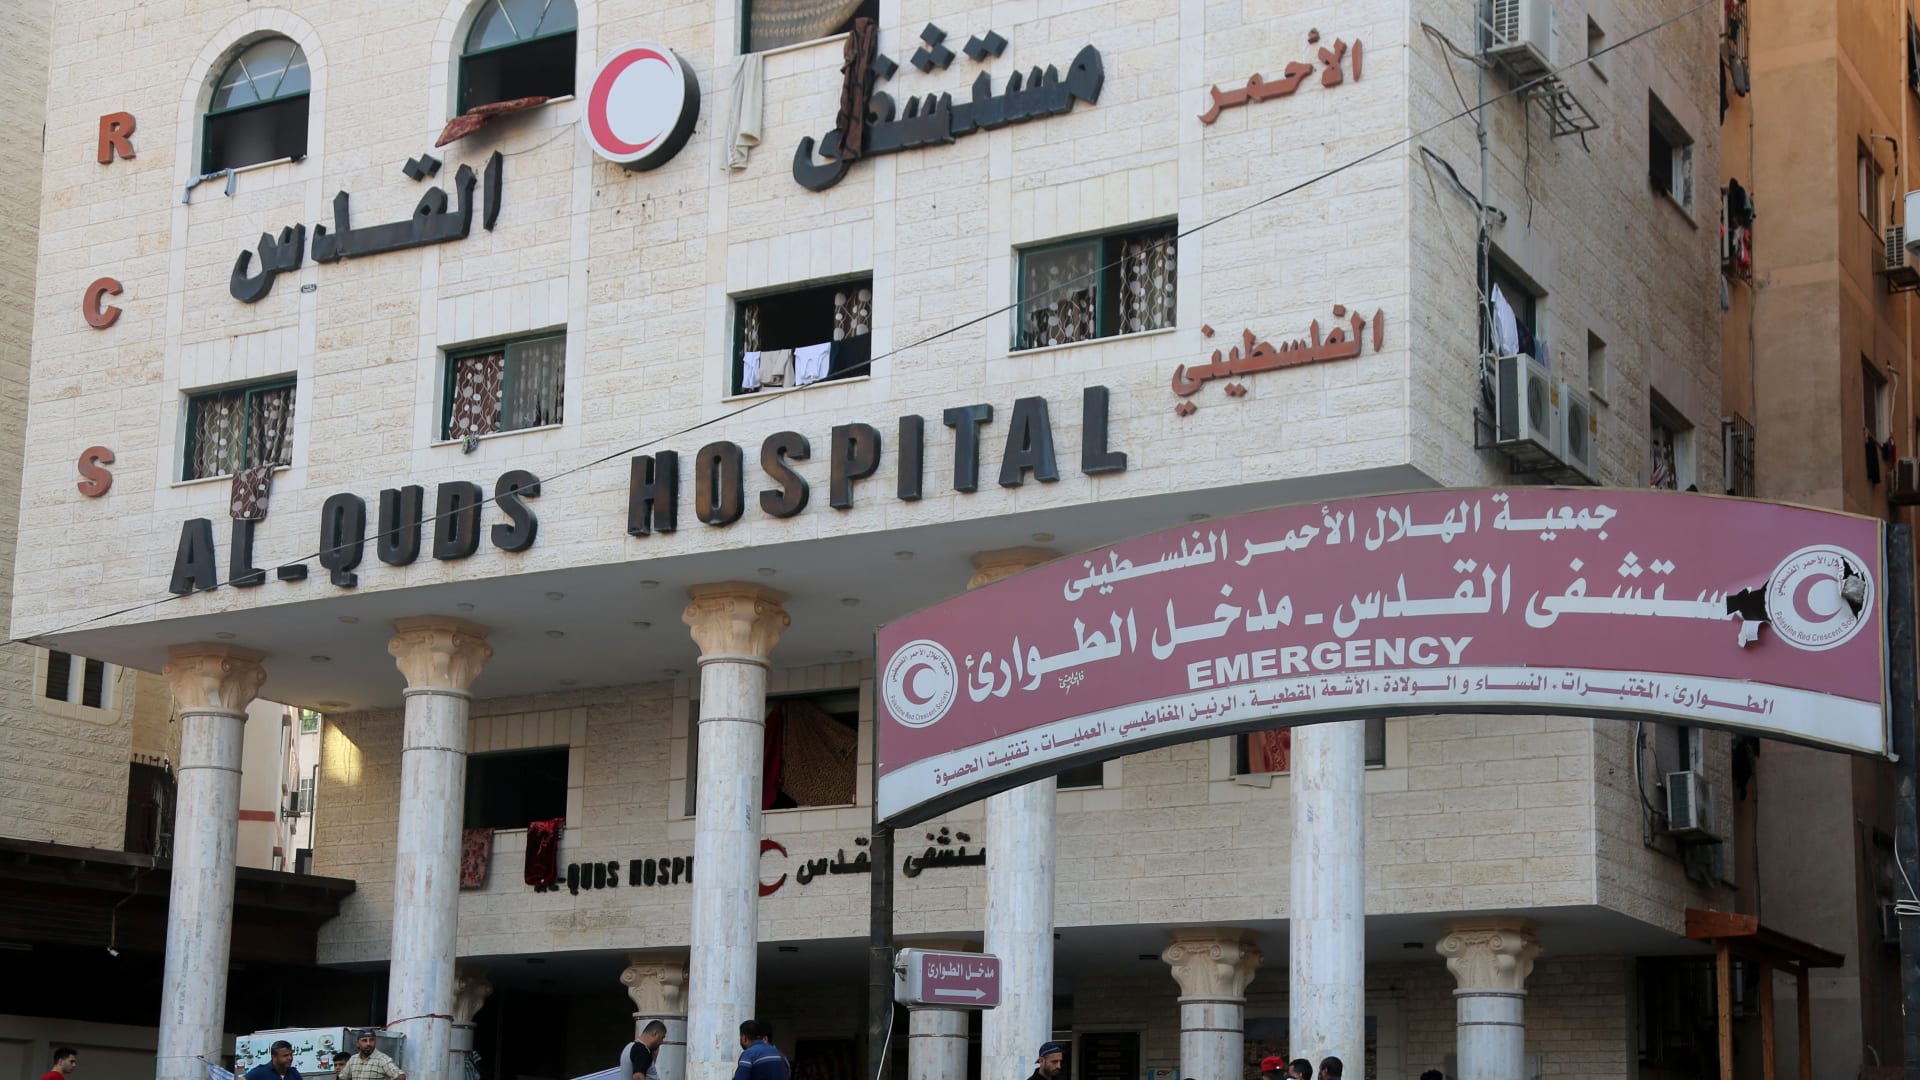 رعب وموت في كل مكان.. شاهد ما قاله مراسل CNN عن الوضع في مستشفى الشفاء بغزة